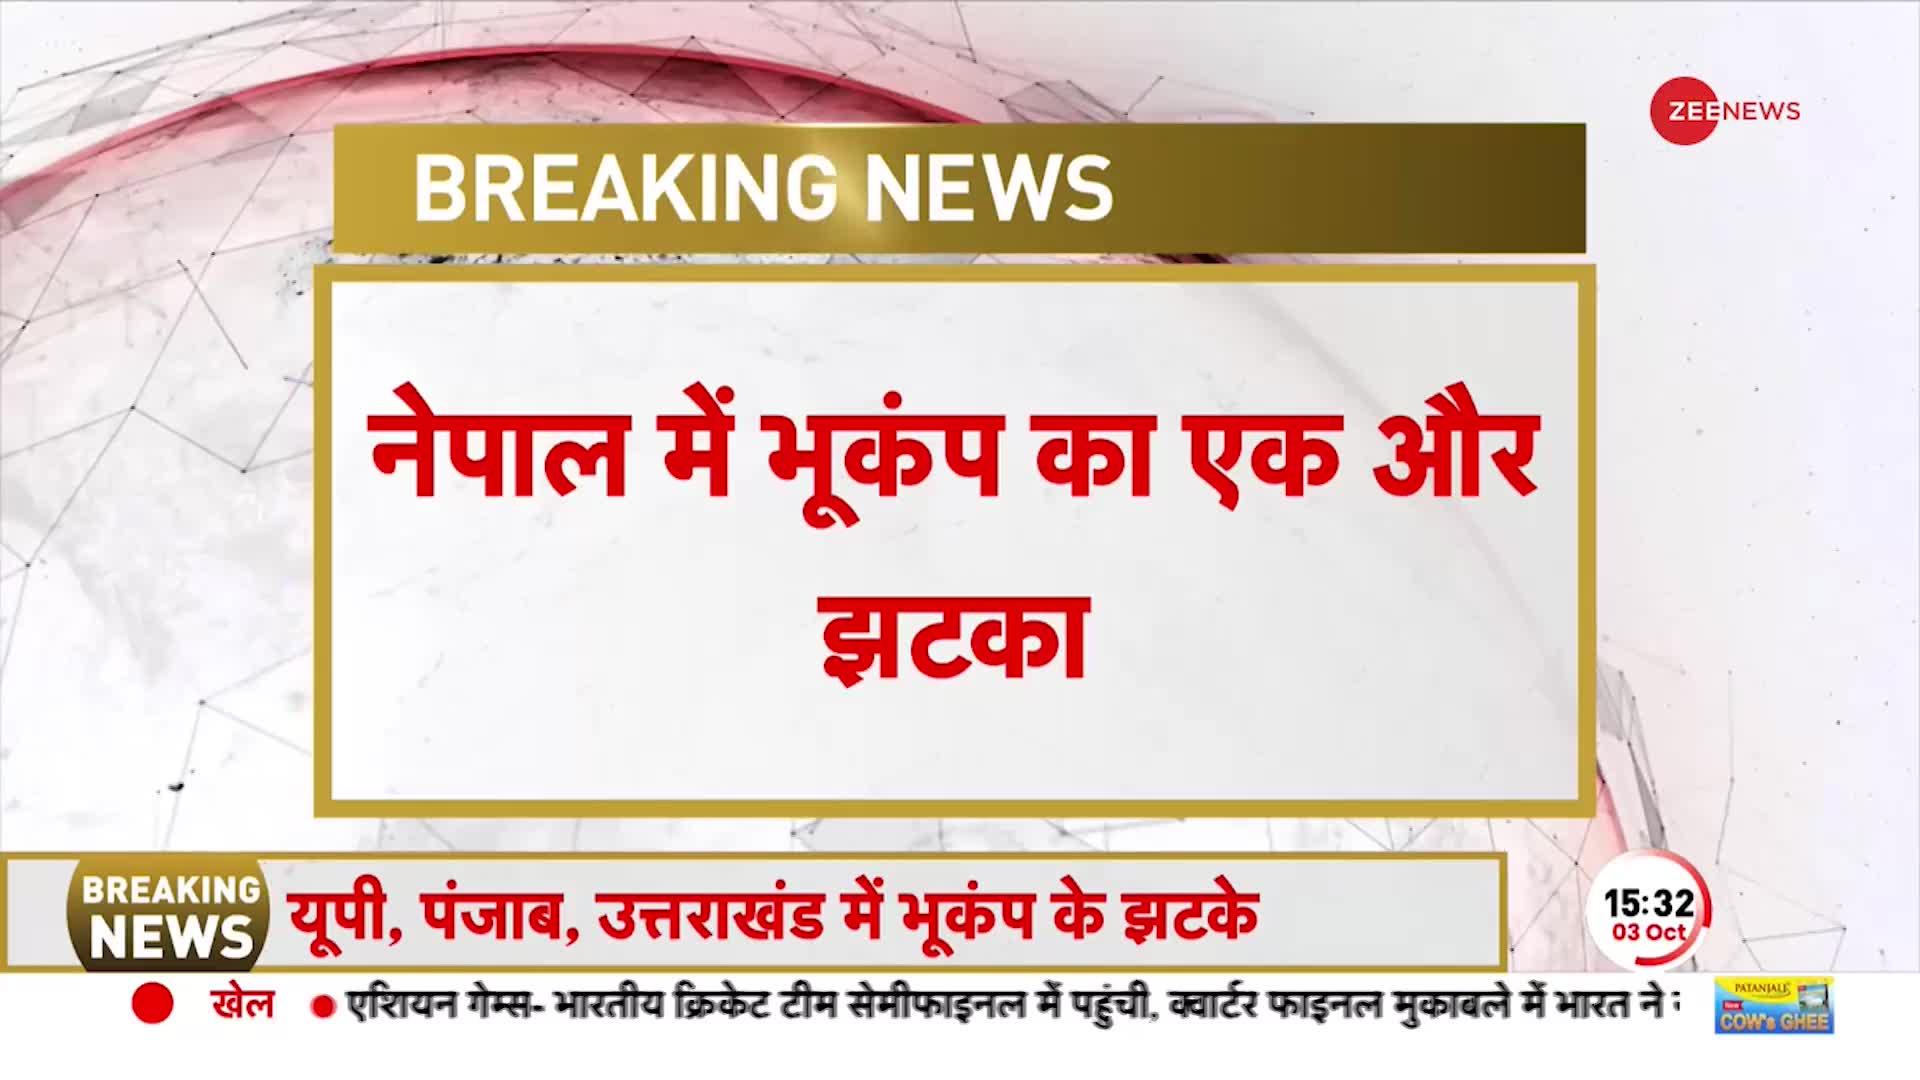 Earthquake in Delhi NCR: भूकंप के ऐसे झटके..कांप उठी धरती, वीडियो देख उड़ जाएंगे होश!